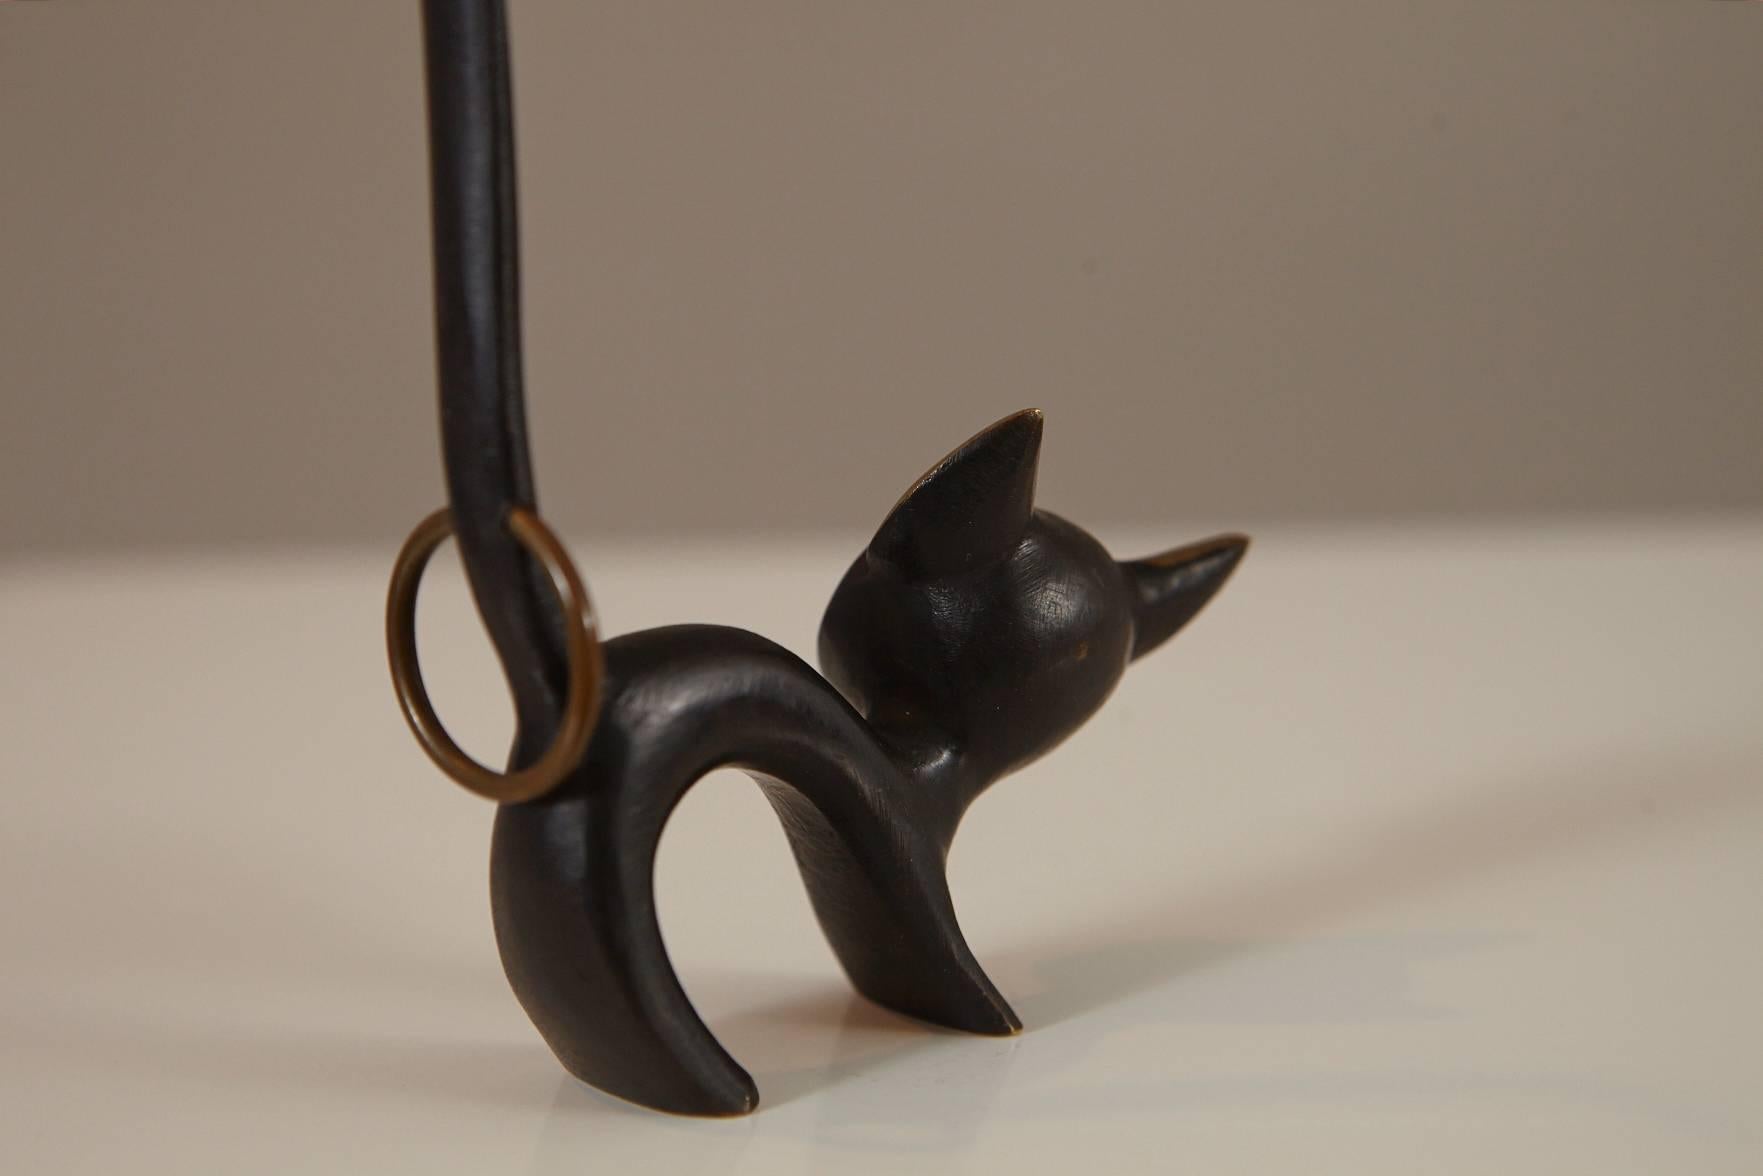 Blackened Walter Bosse Brass Cat Figurine Pretzel Holder or Ring Holder by Hertha Baller